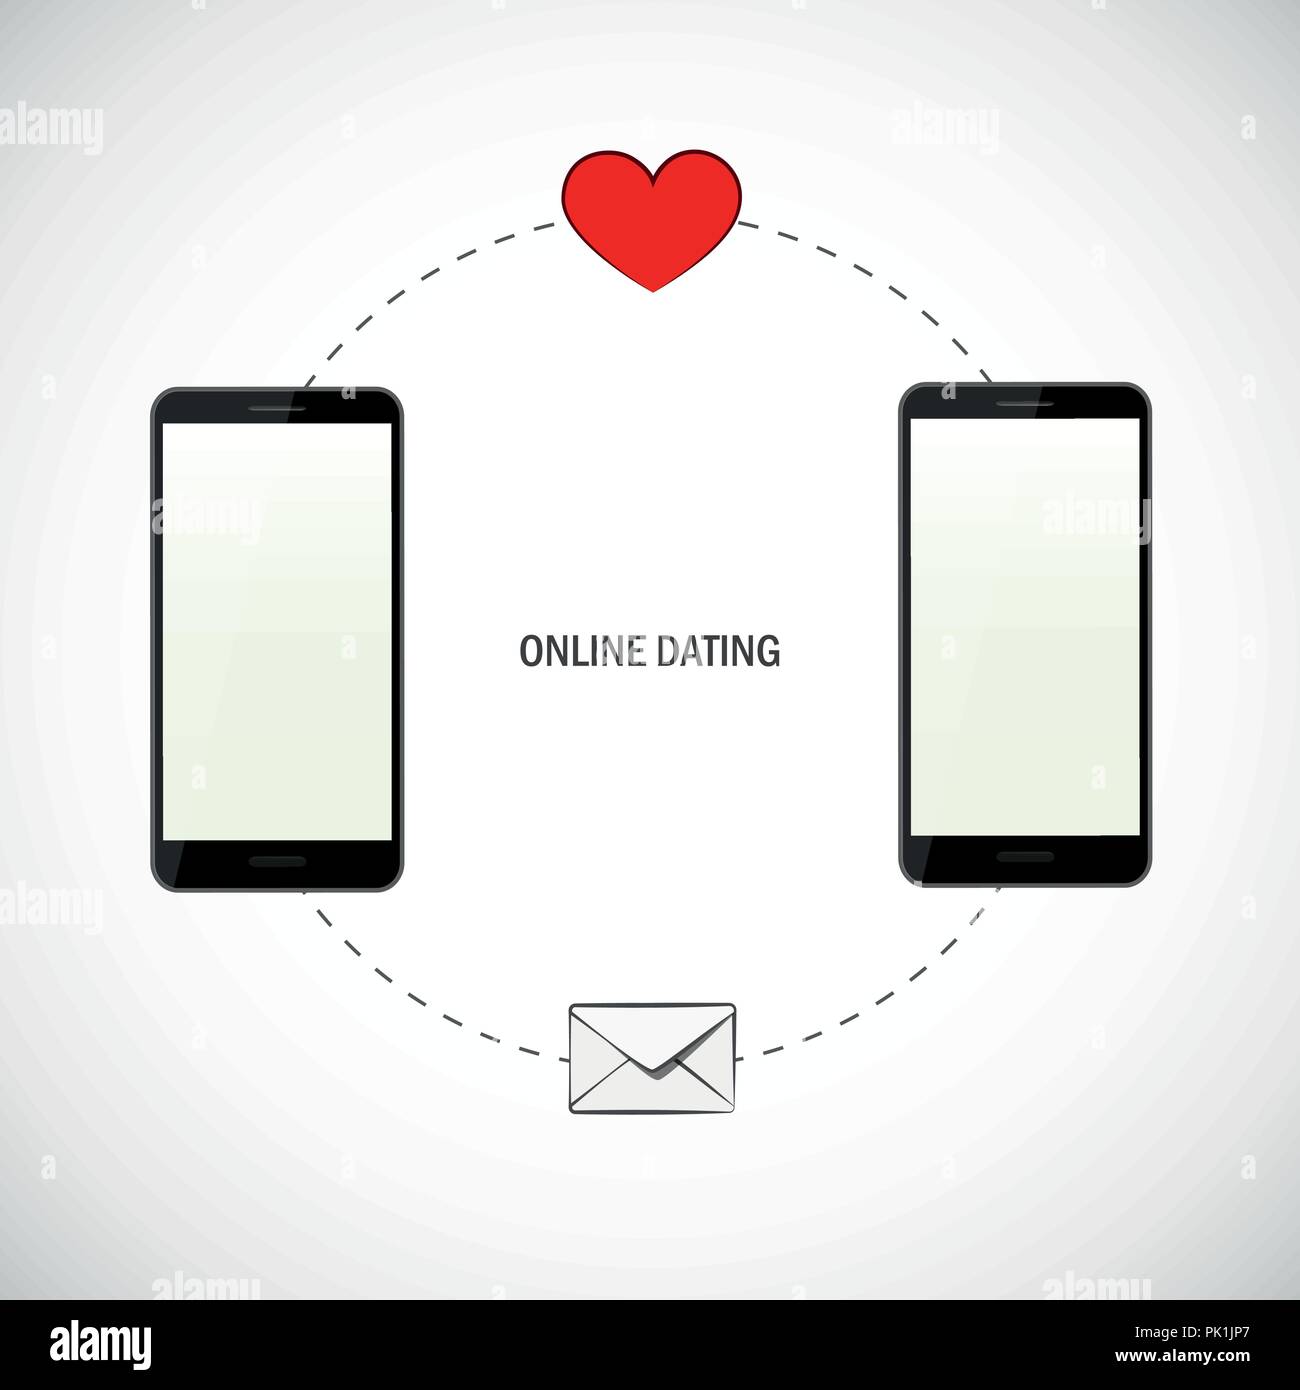 Senden Sie die perfekte erste Nachricht online dating